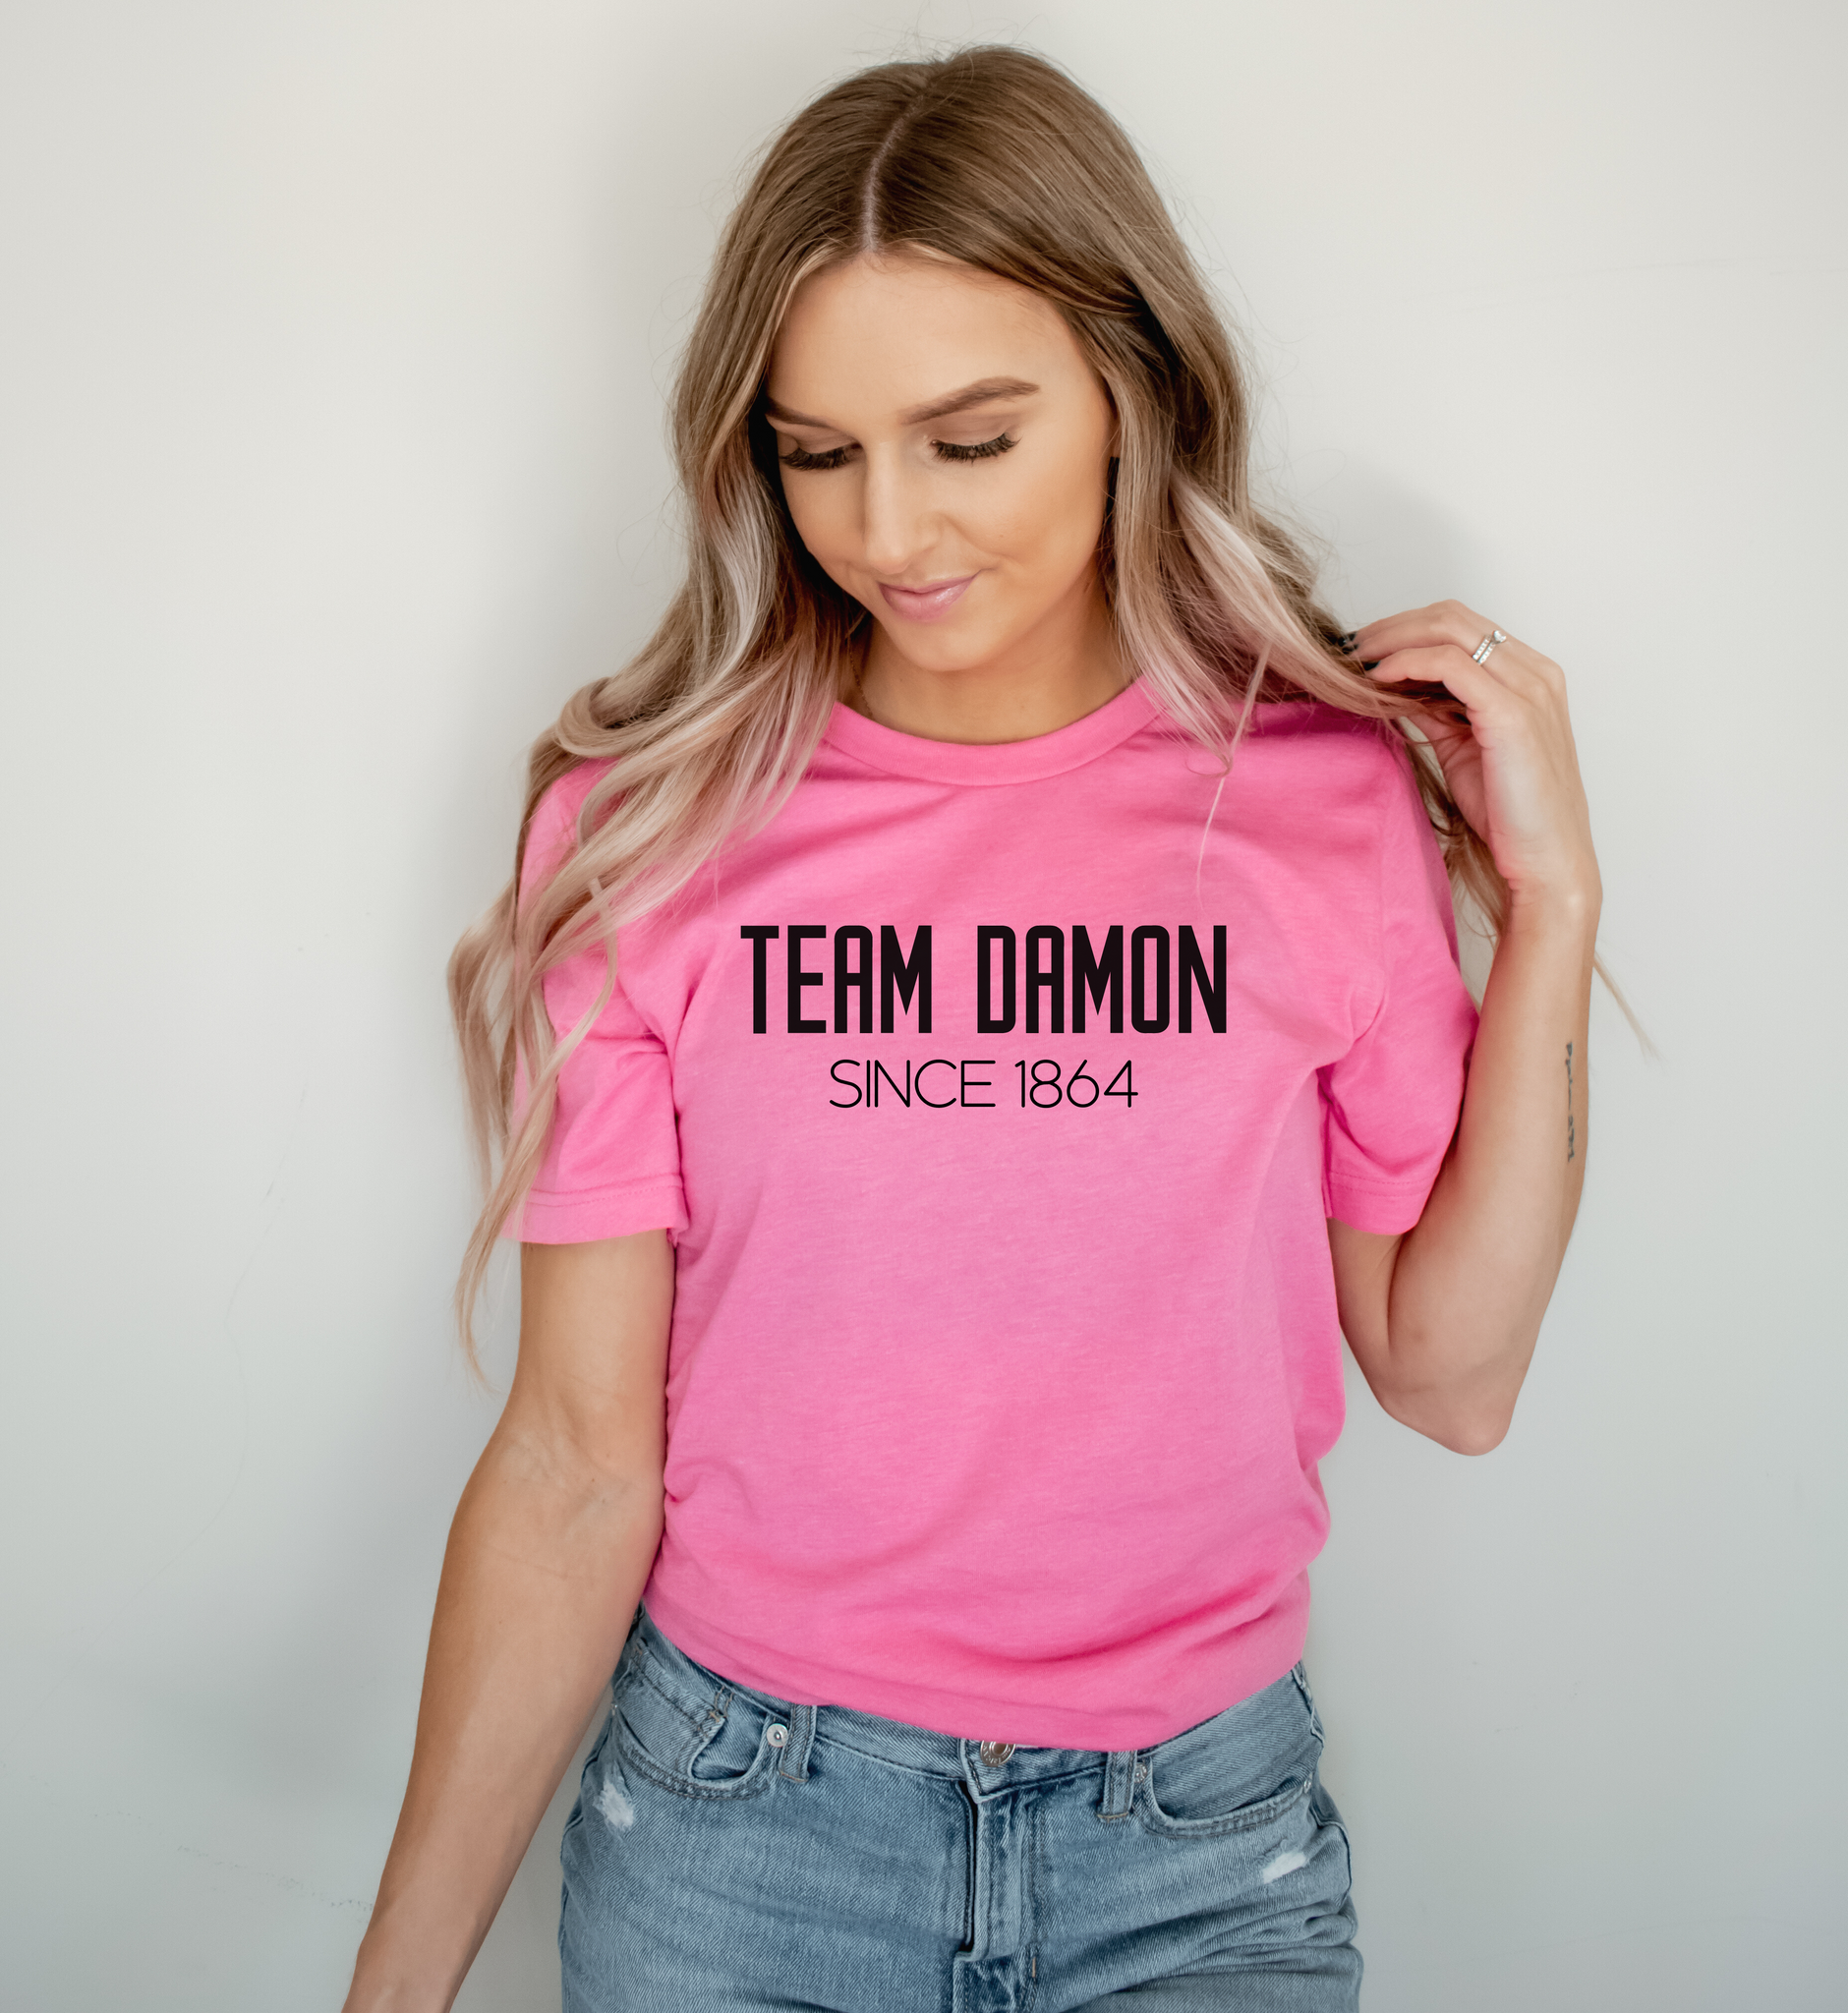 Team Damon Since 1864 Shirt